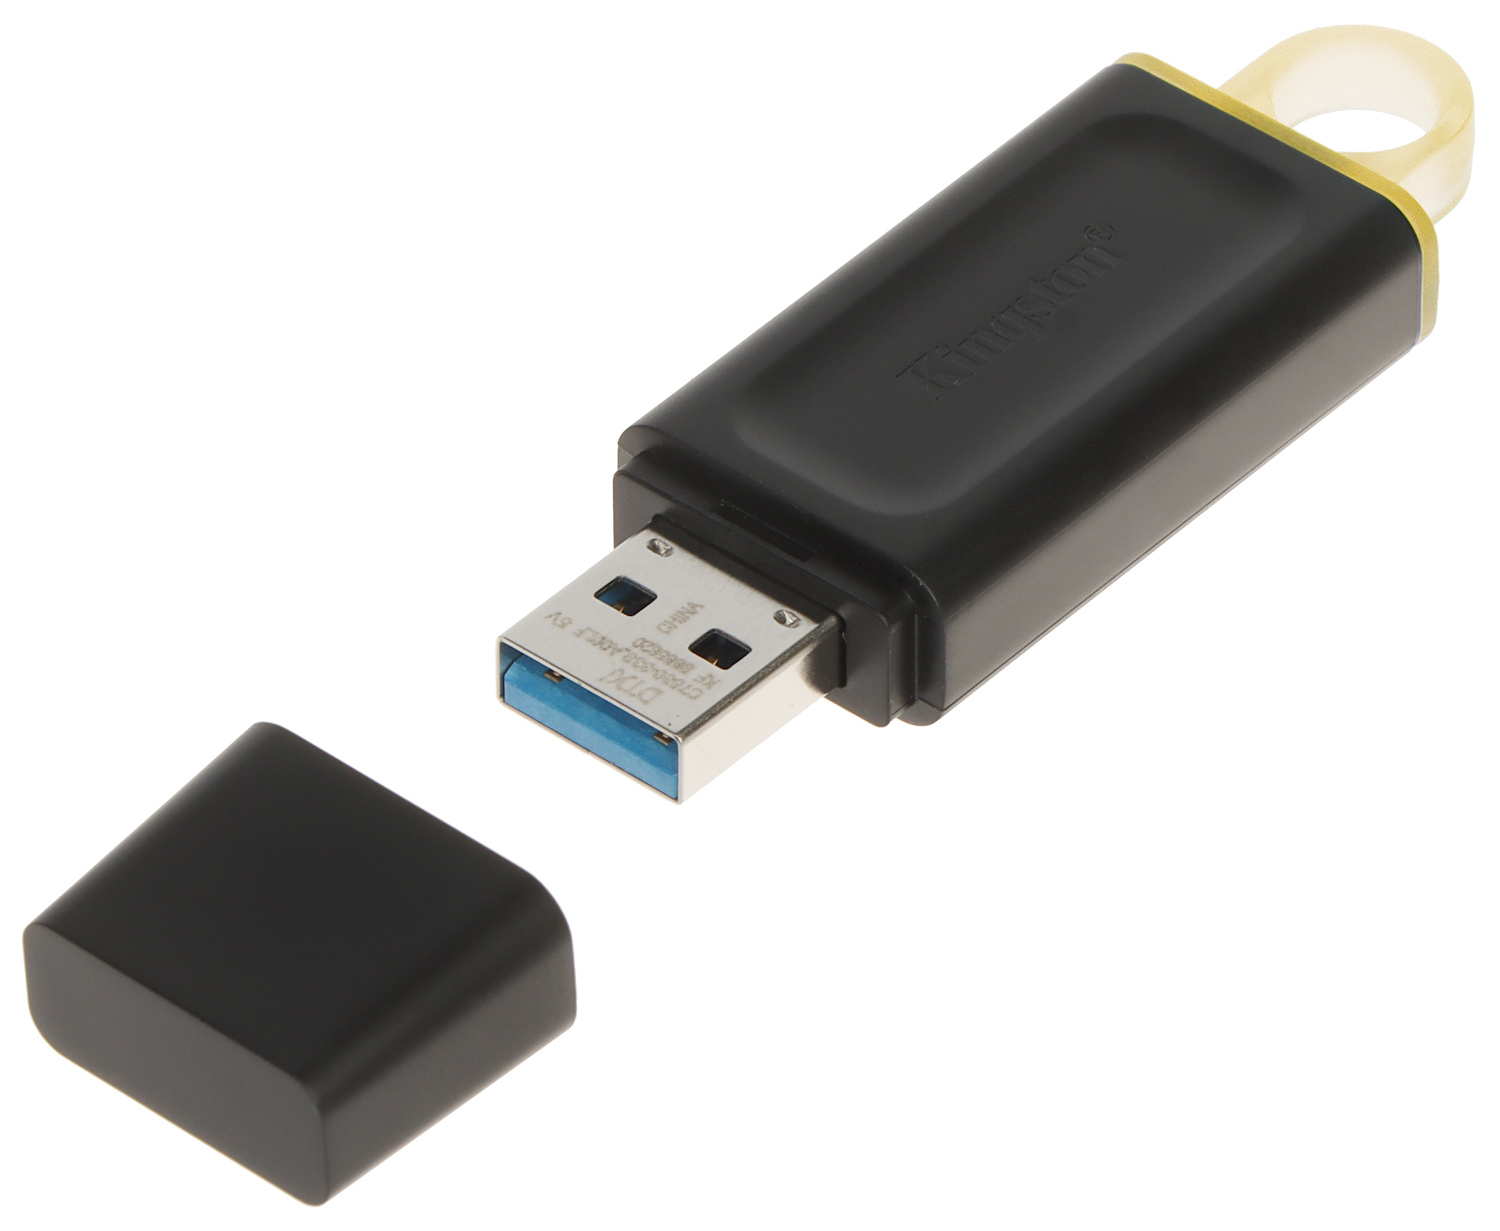 FLASH DRIVE USB 3.0 FD-128/DT50-KING 128 GB USB 3.1/3. - Flash Drives -  Delta